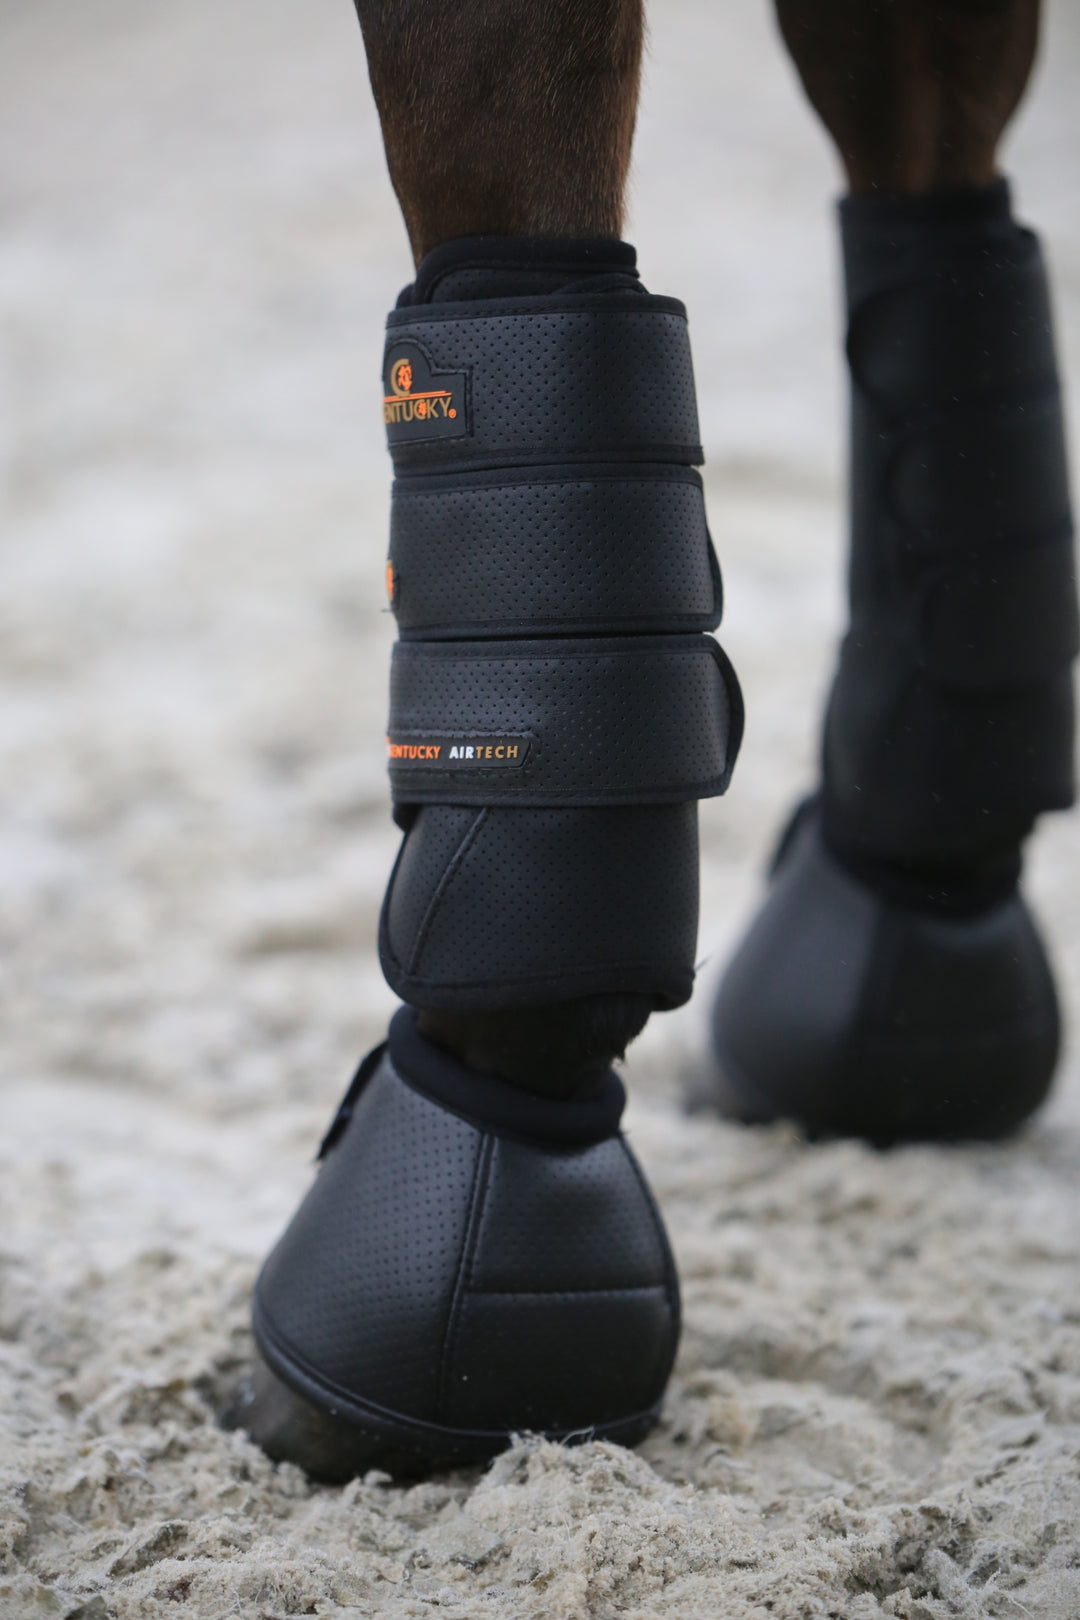 Kentucky Horsewear Overreach Boots Air Tech, Black